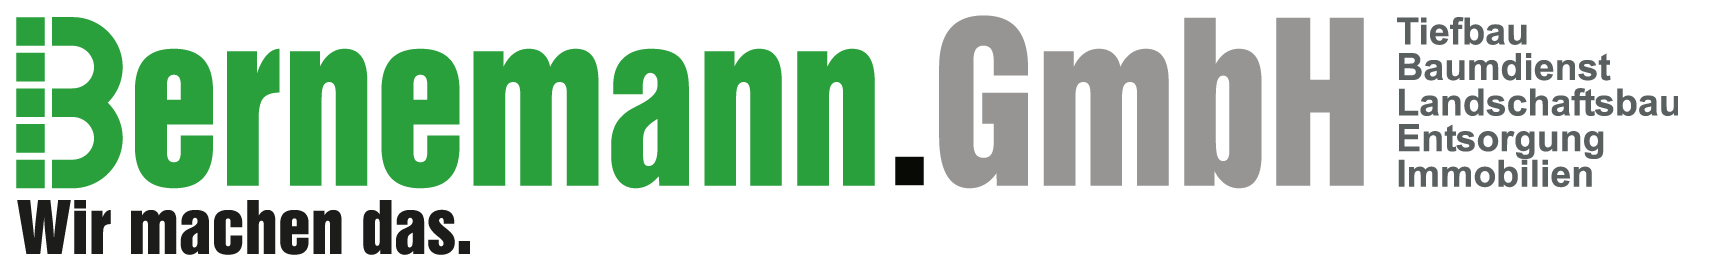 Bernemann GmbH Logo